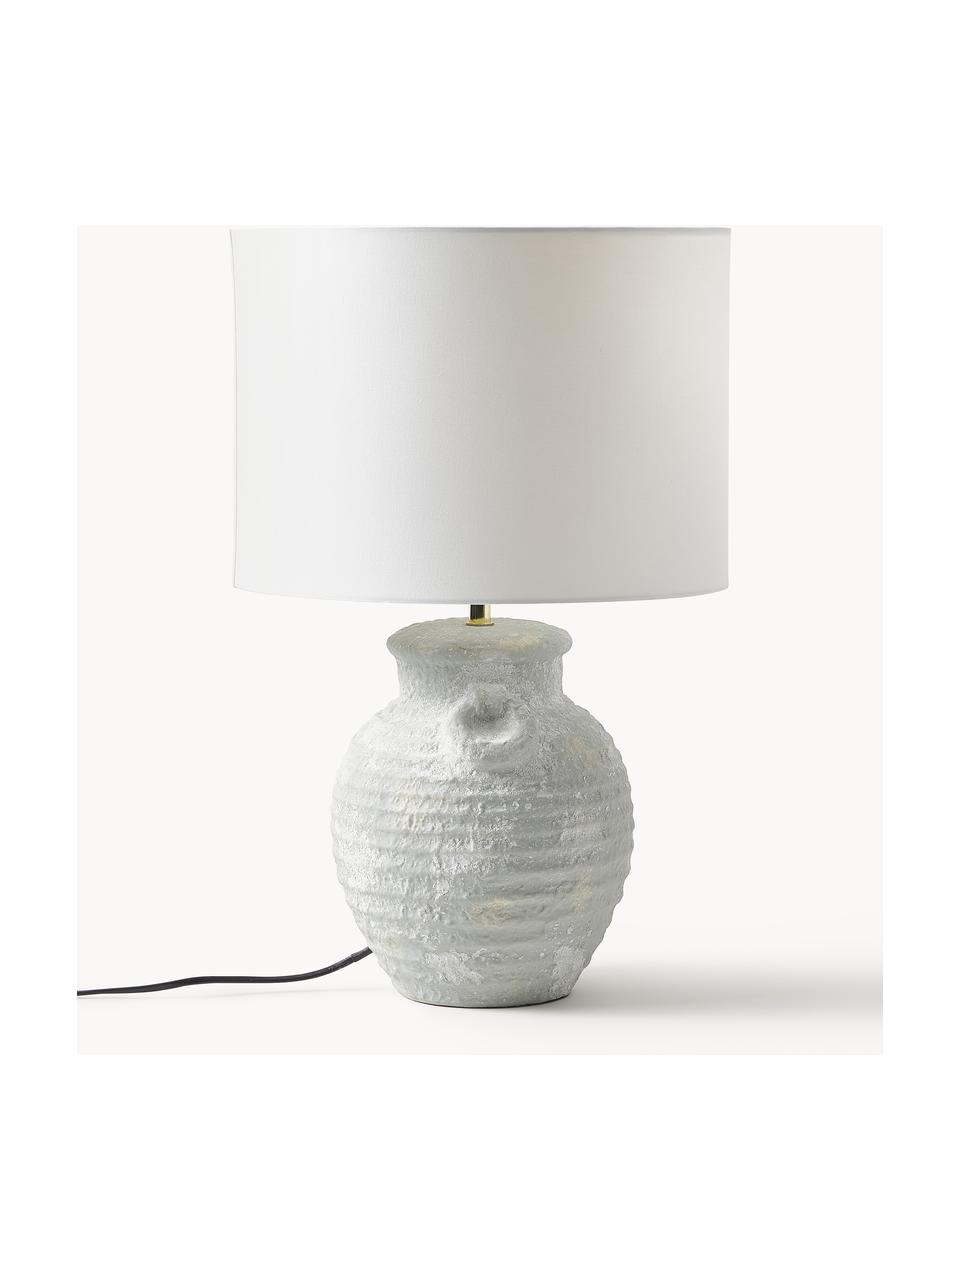 Grote tafellamp Tiva met keramische voet, Lampenkap: textiel (100% polyester), Lampvoet: keramiek, Wit, lichtgrijs, Ø 35 x H 55 cm